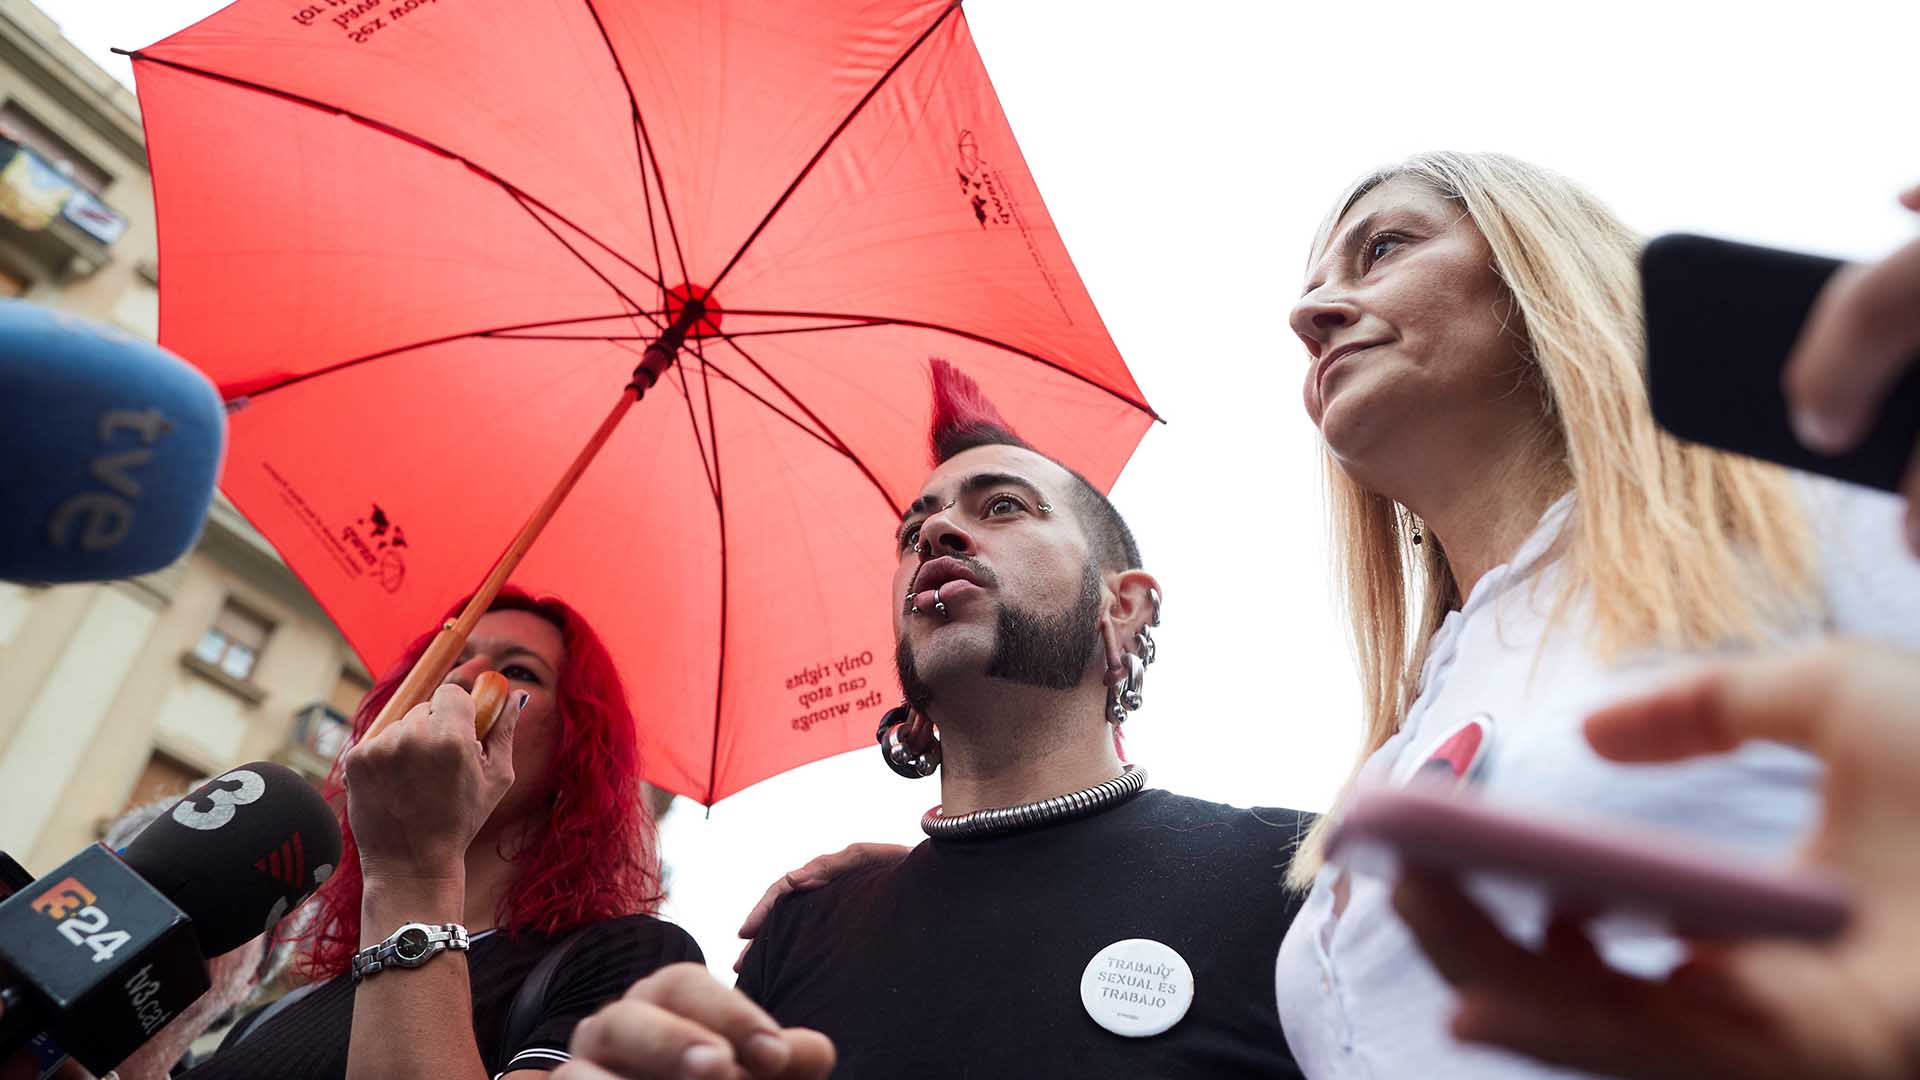 El sindicato de trabajadoras sexuales pide al Gobierno que "dimita en bloque"